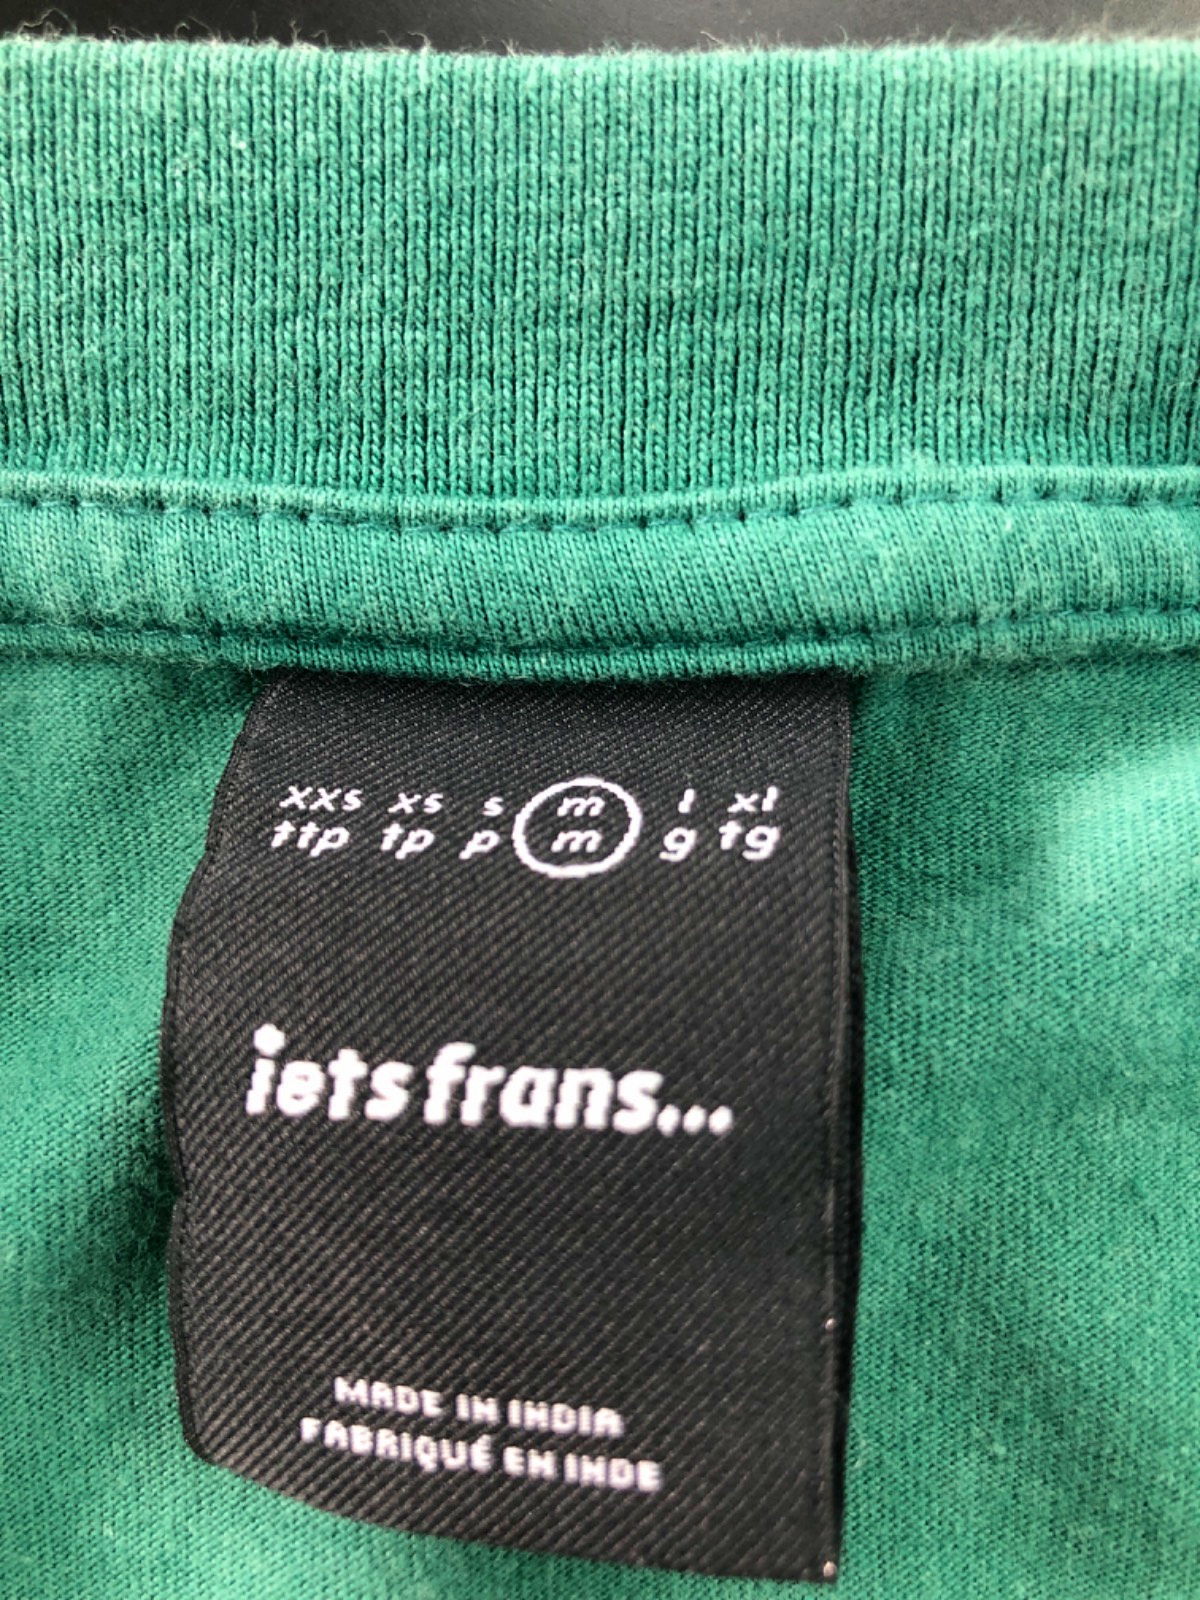 iets frans Green T-Shirt Medium